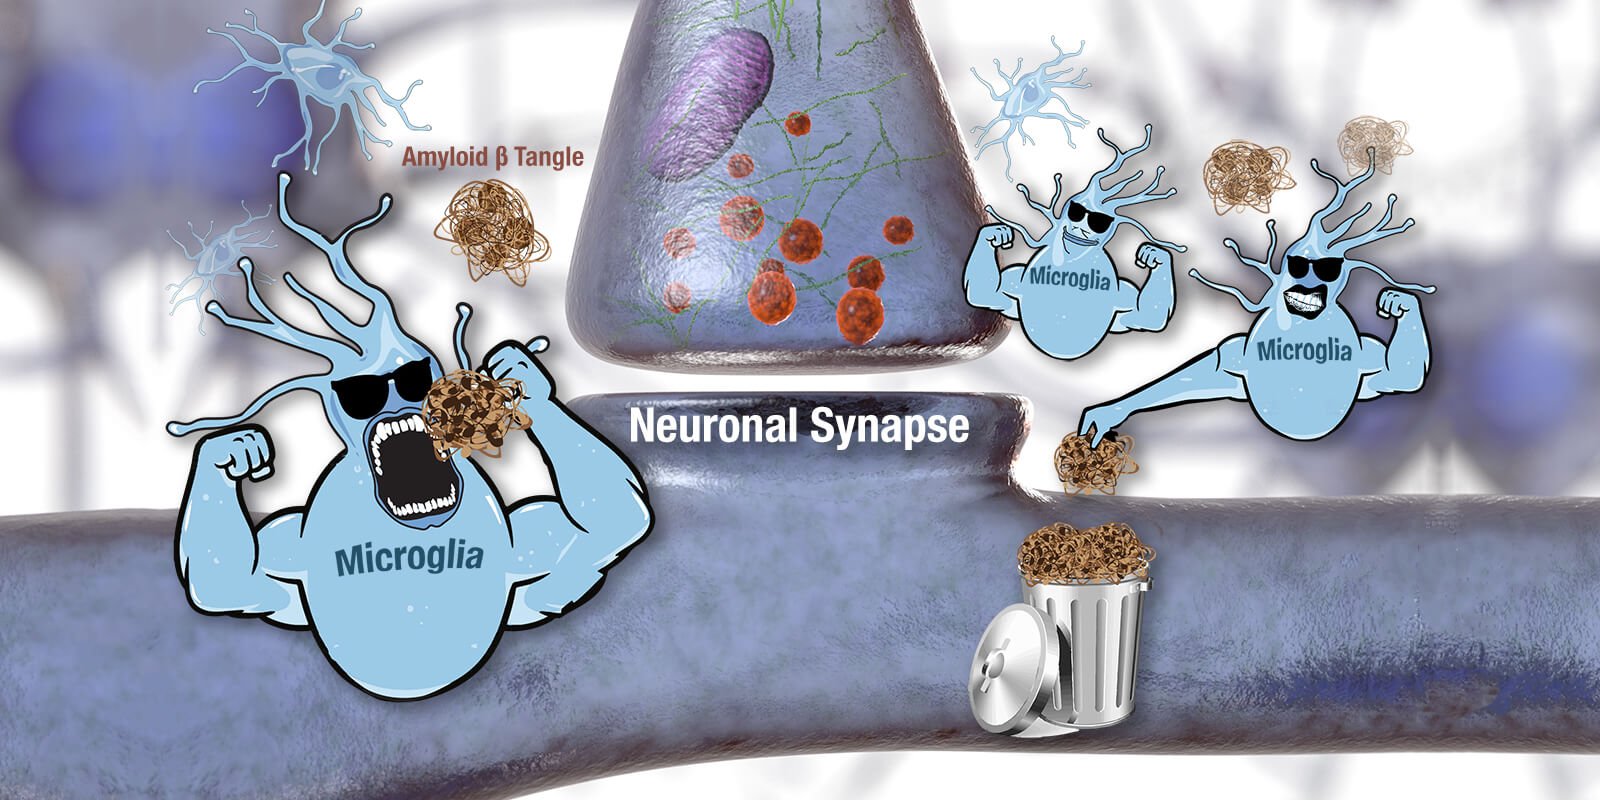 synapse-microglia illustration wide 1600x800.jpg